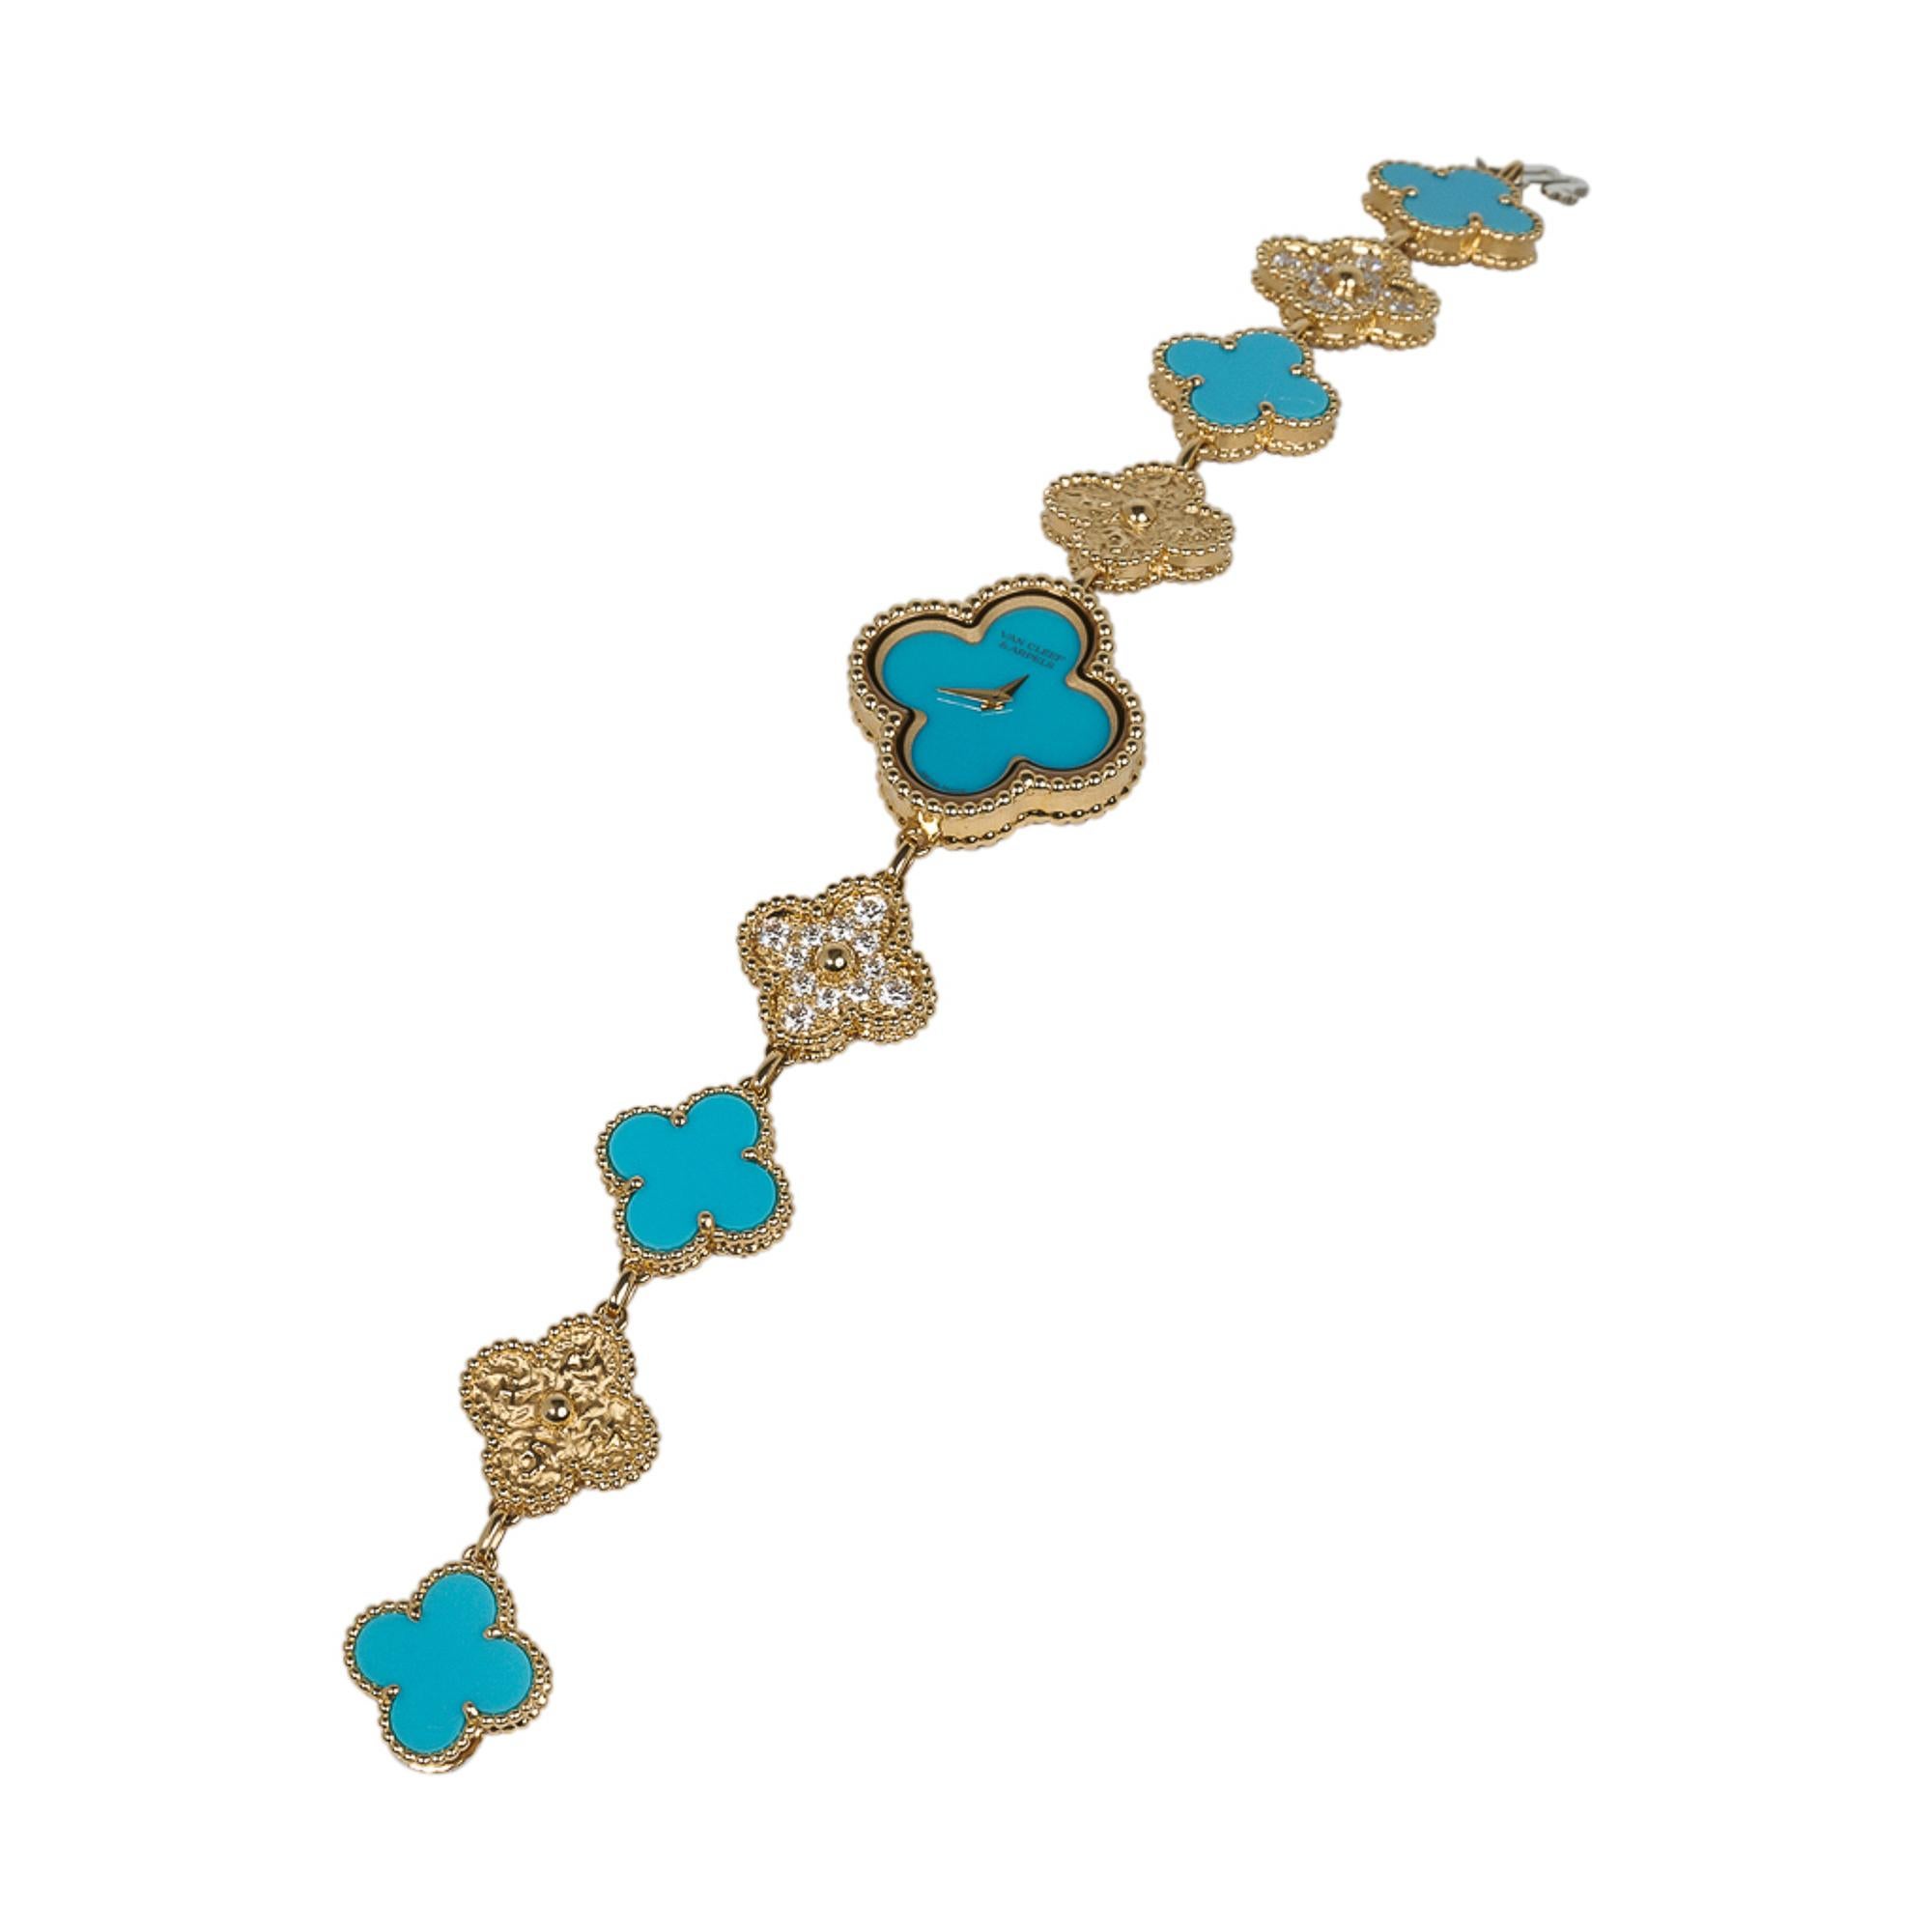 Taille brillant Van Cleef & Arpels Montre Turquoise / Diamant Sweet Alhambra 18 Karat Numérotée